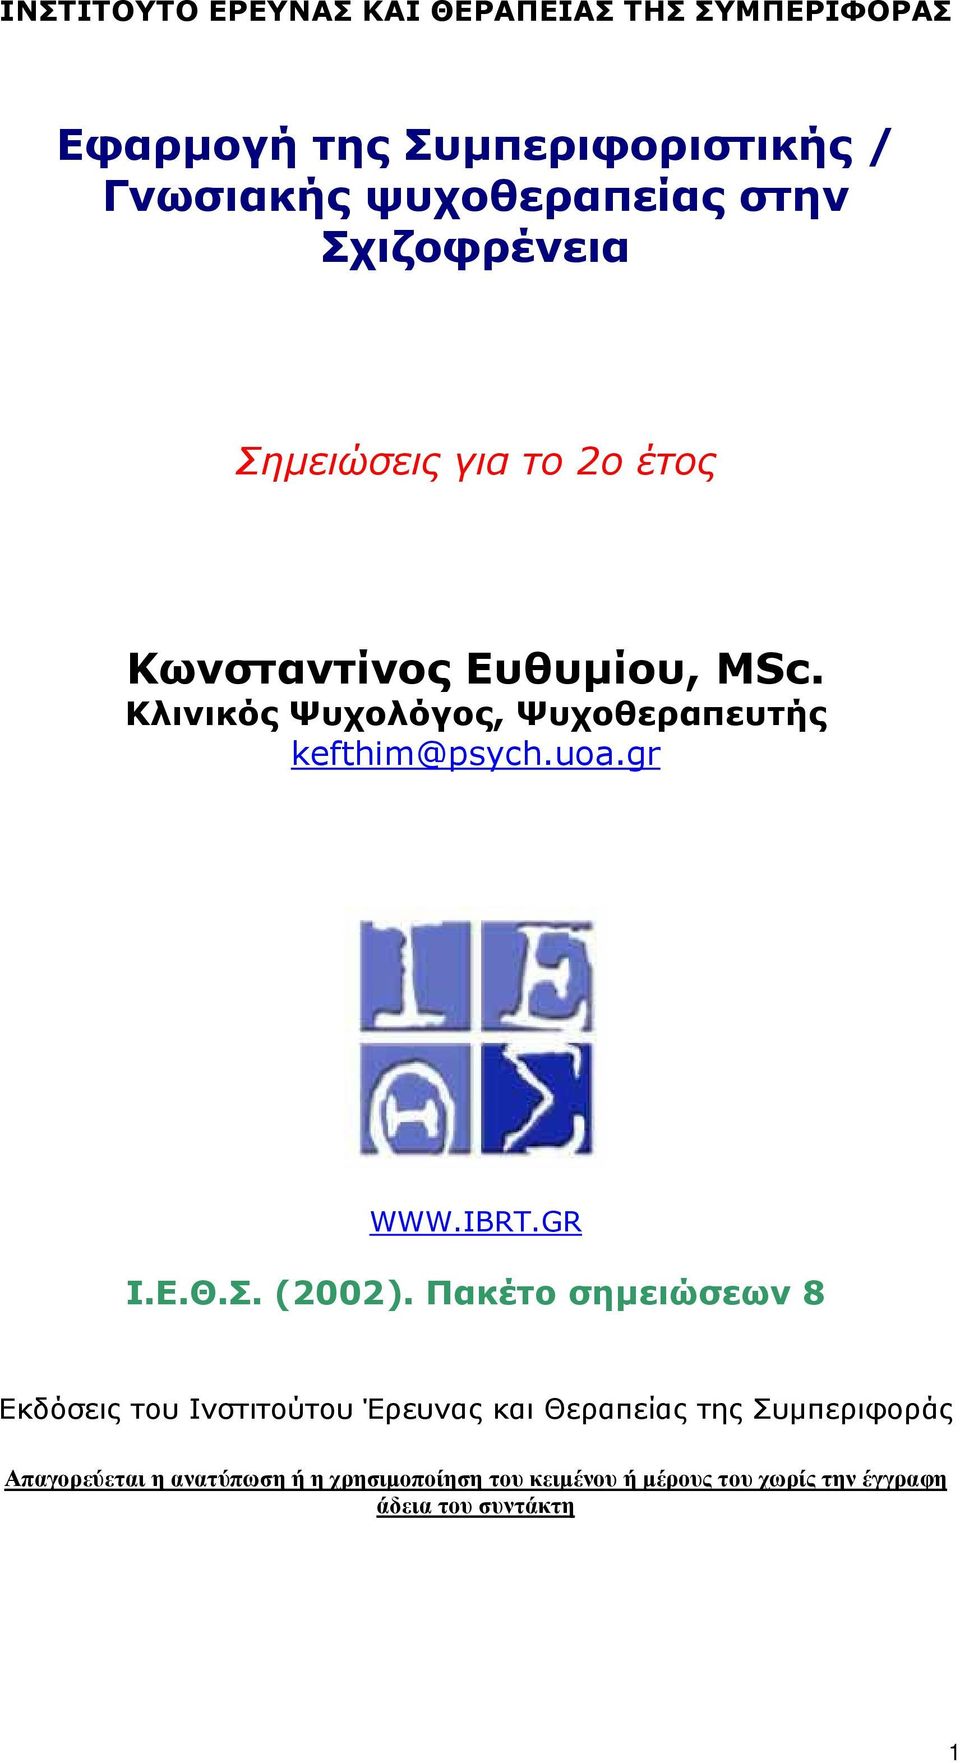 Κλινικός Ψυχολόγος, Ψυχοθεραπευτής kefthim@psych.uoa.gr WWW.IBRT.GR Ι.Ε.Θ.Σ. (2002).